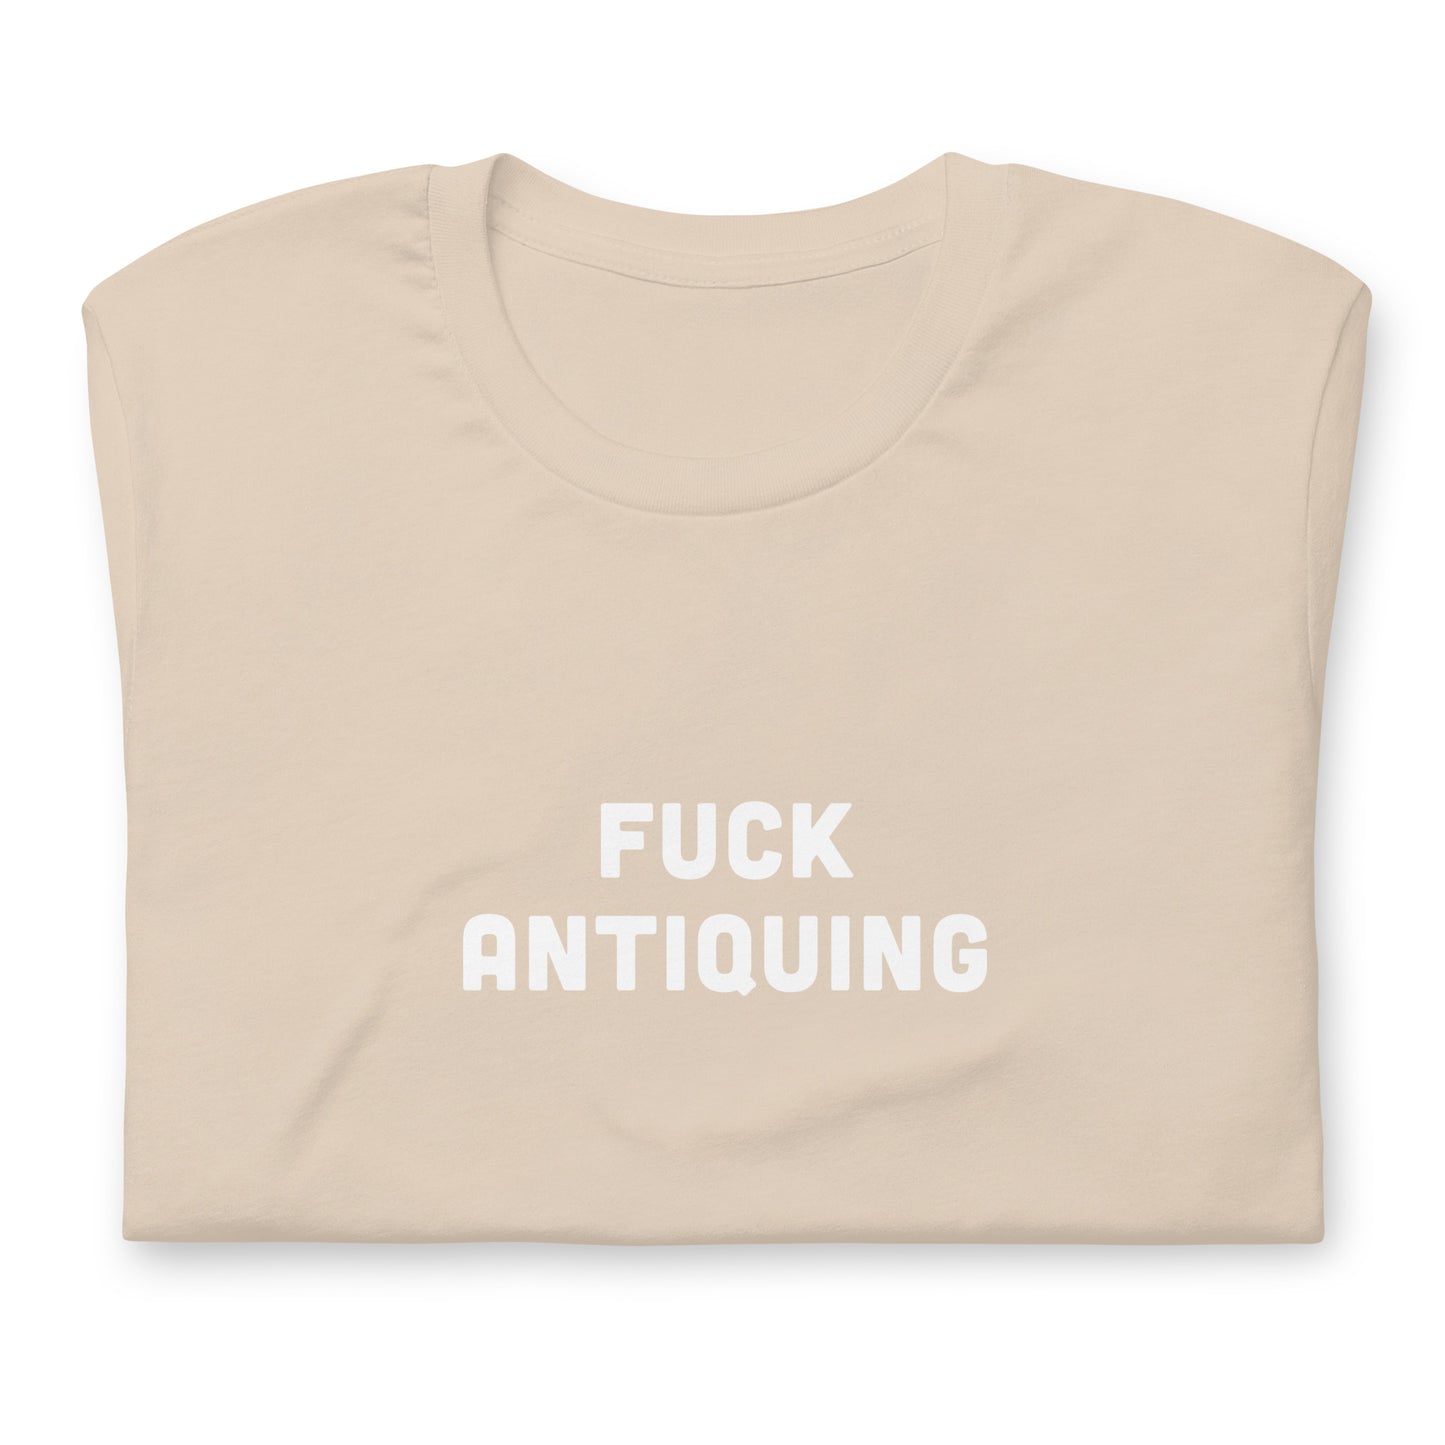 Fuck Antiquing T-Shirt Size L Color Asphalt